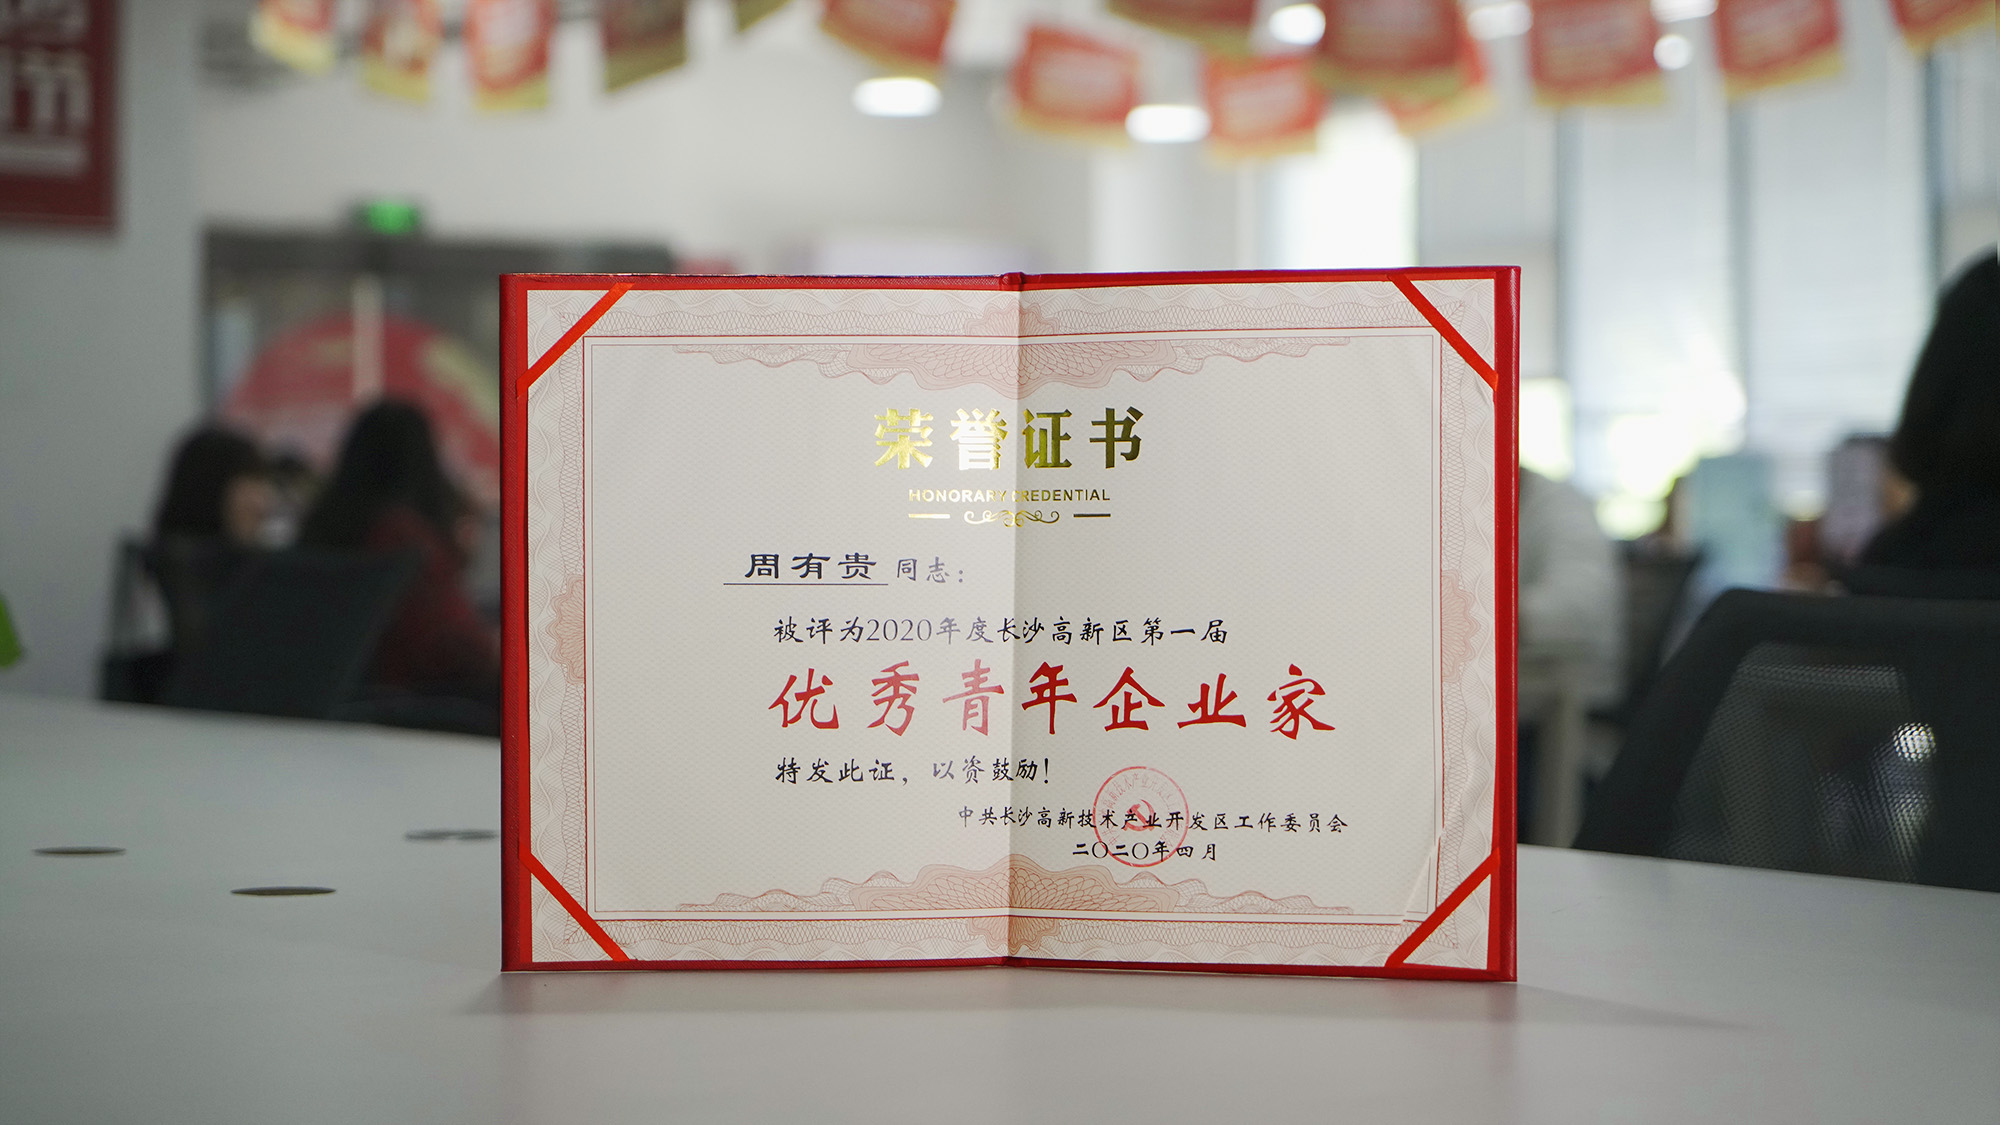 传承五四精神,潭州教育创始人周有贵荣获优秀青年企业家称号